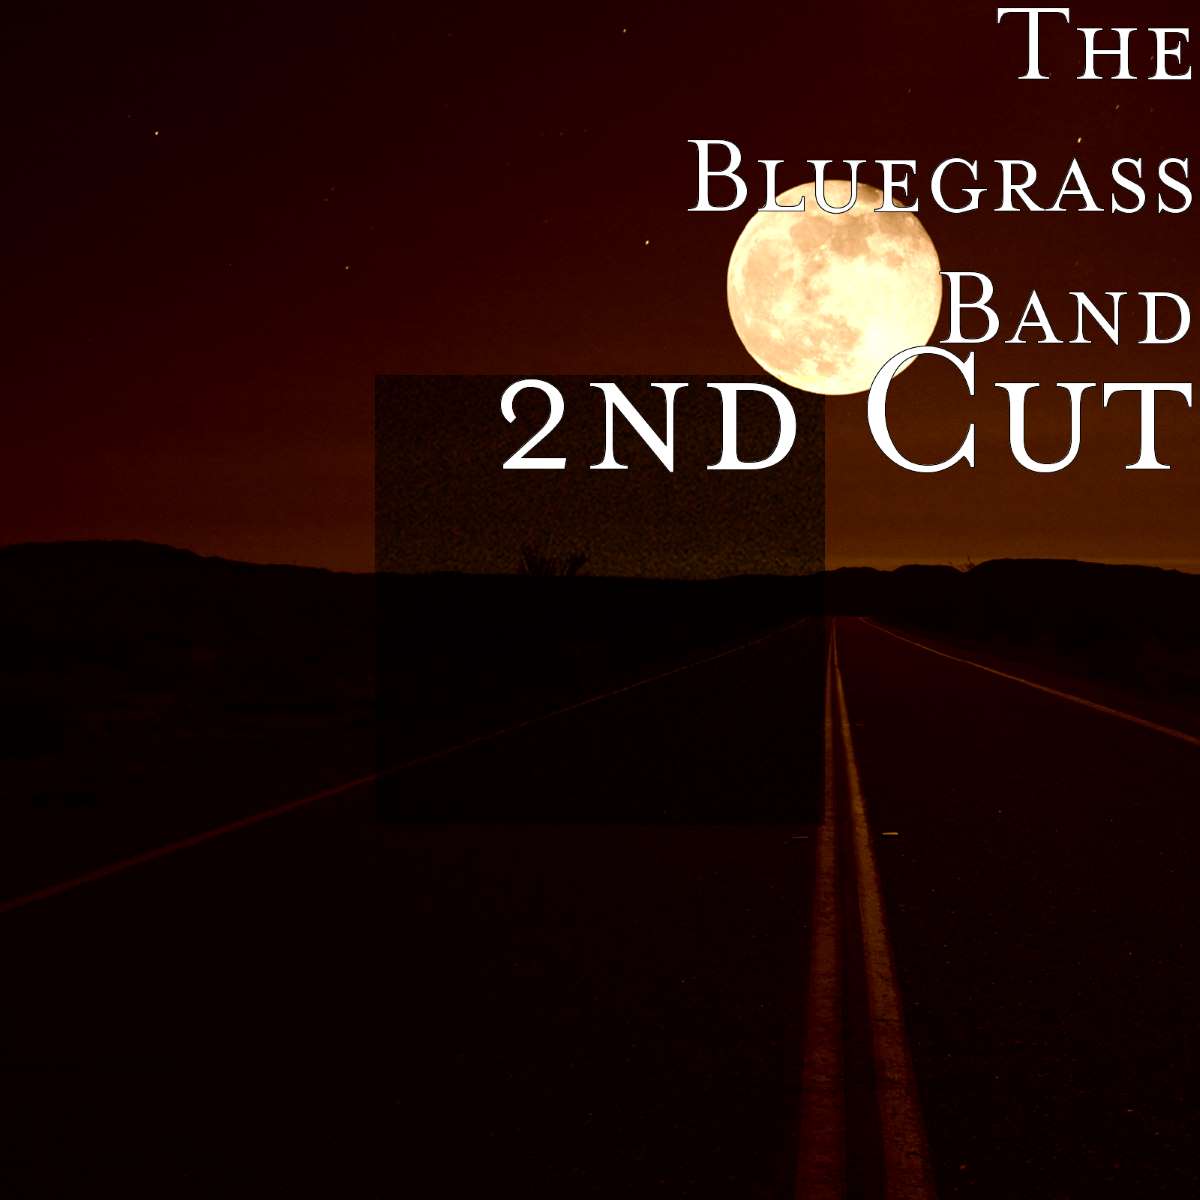 Bluegrass Band - 2nd Cut cover album